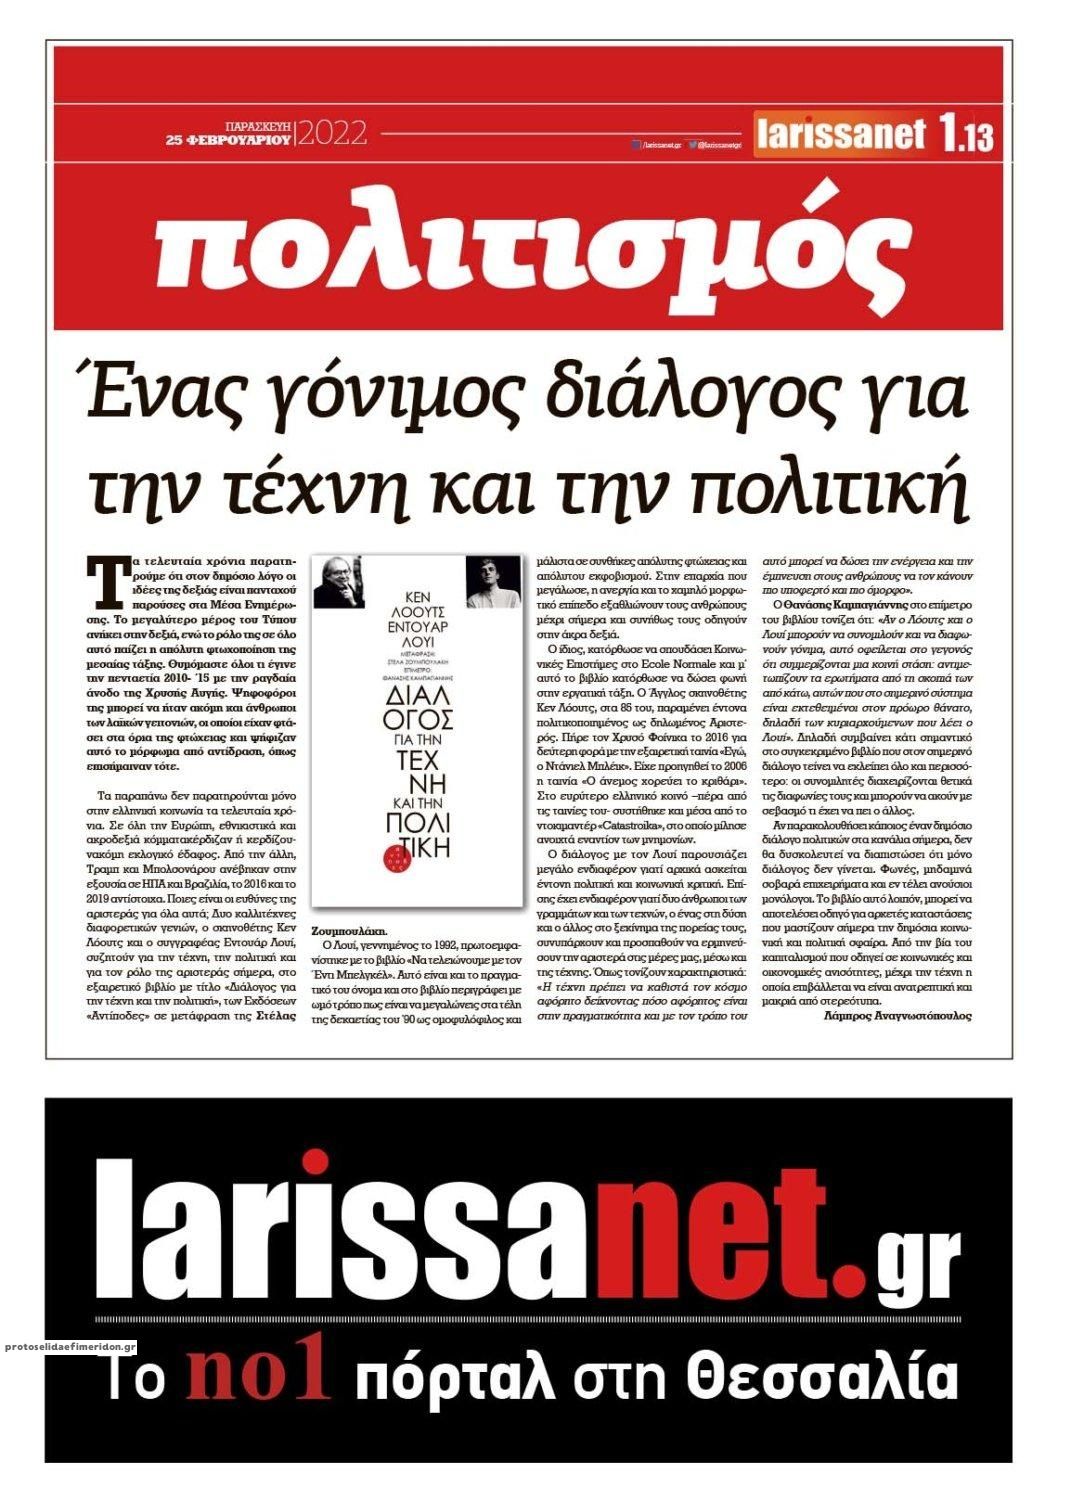 Οπισθόφυλλο εφημερίδας Larissanet